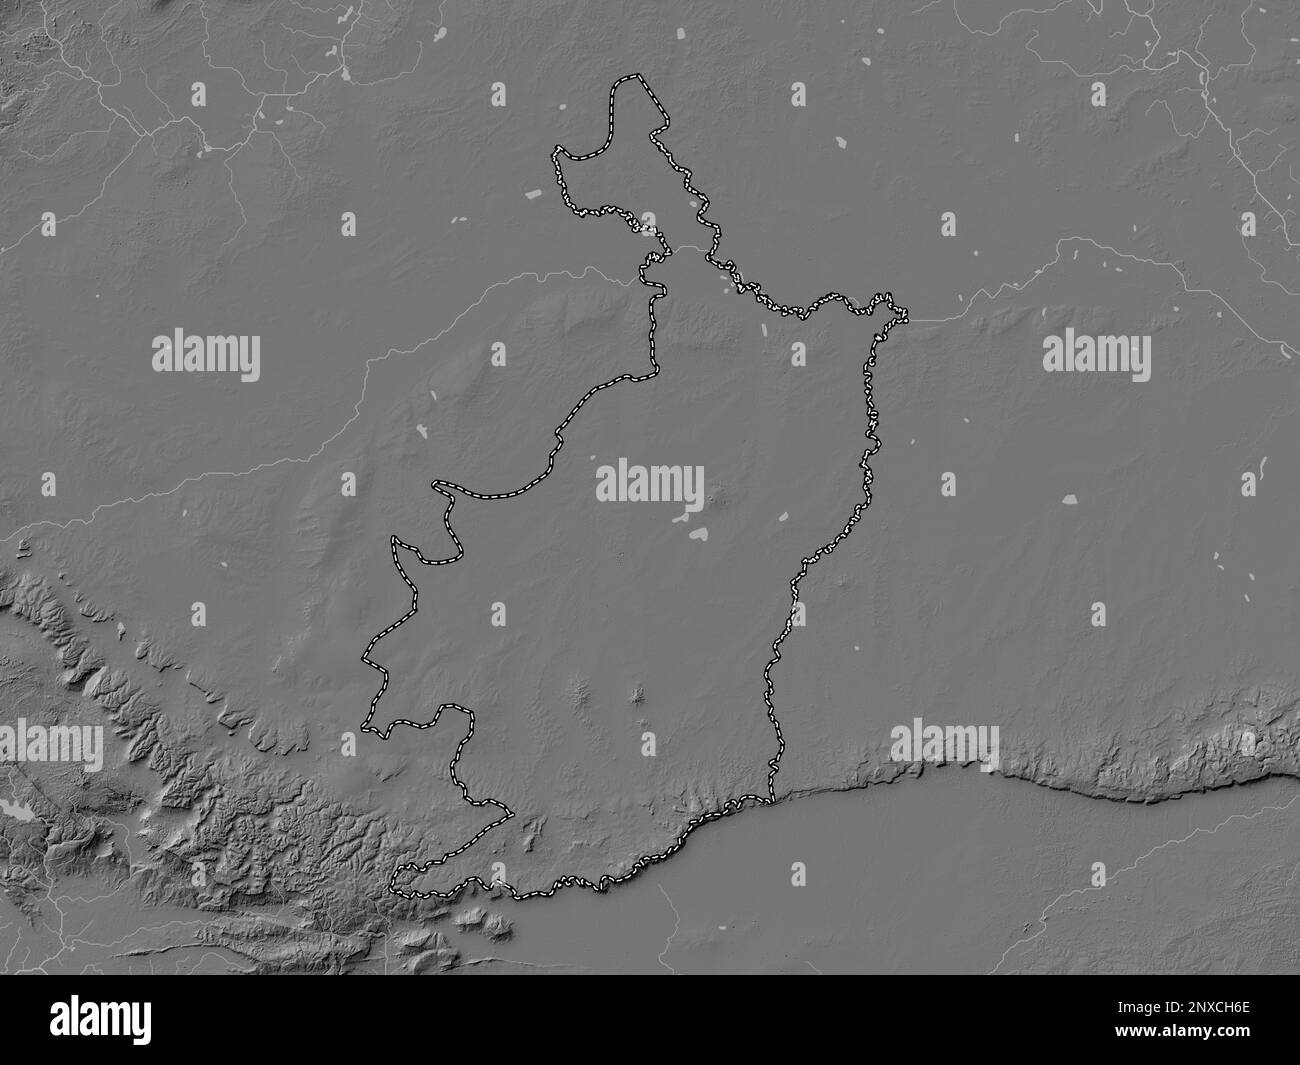 Buri RAM, provincia della Thailandia. Mappa altimetrica bilivello con laghi e fiumi Foto Stock